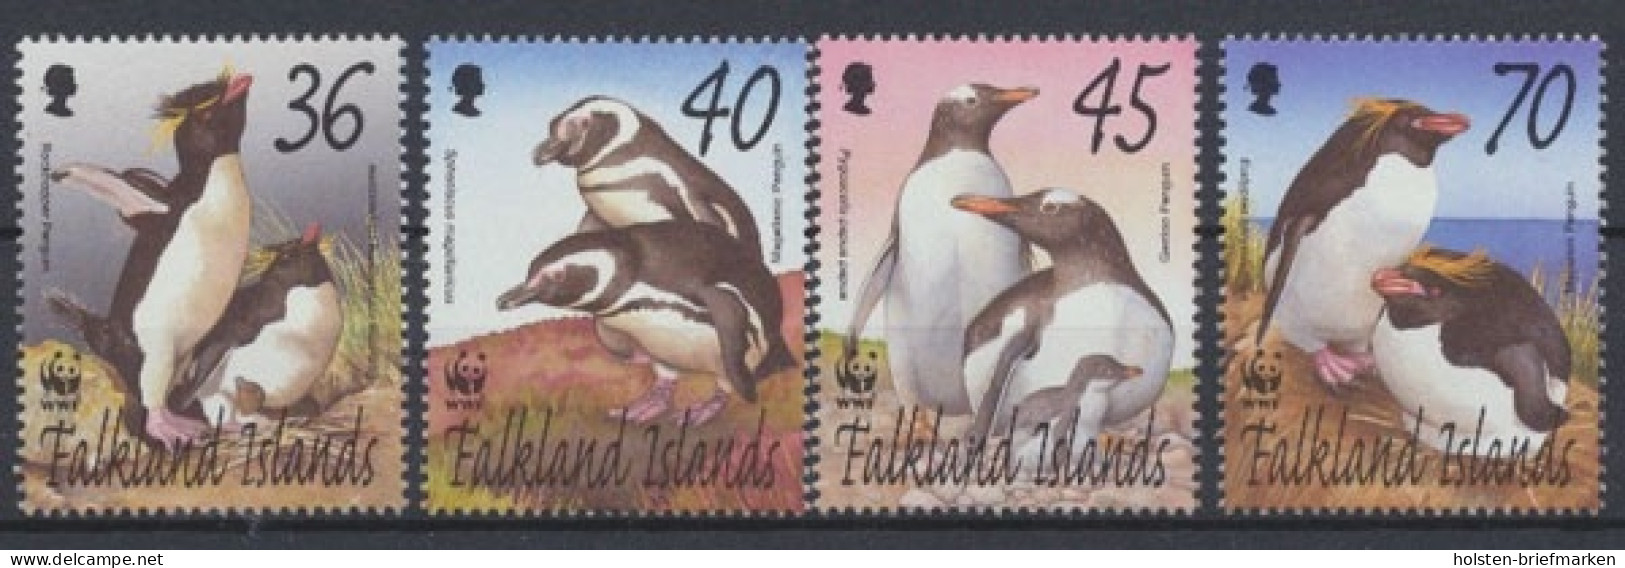 Falklandinseln, Michel Nr. 855-858, Postfrisch/MNH - Falklandinseln